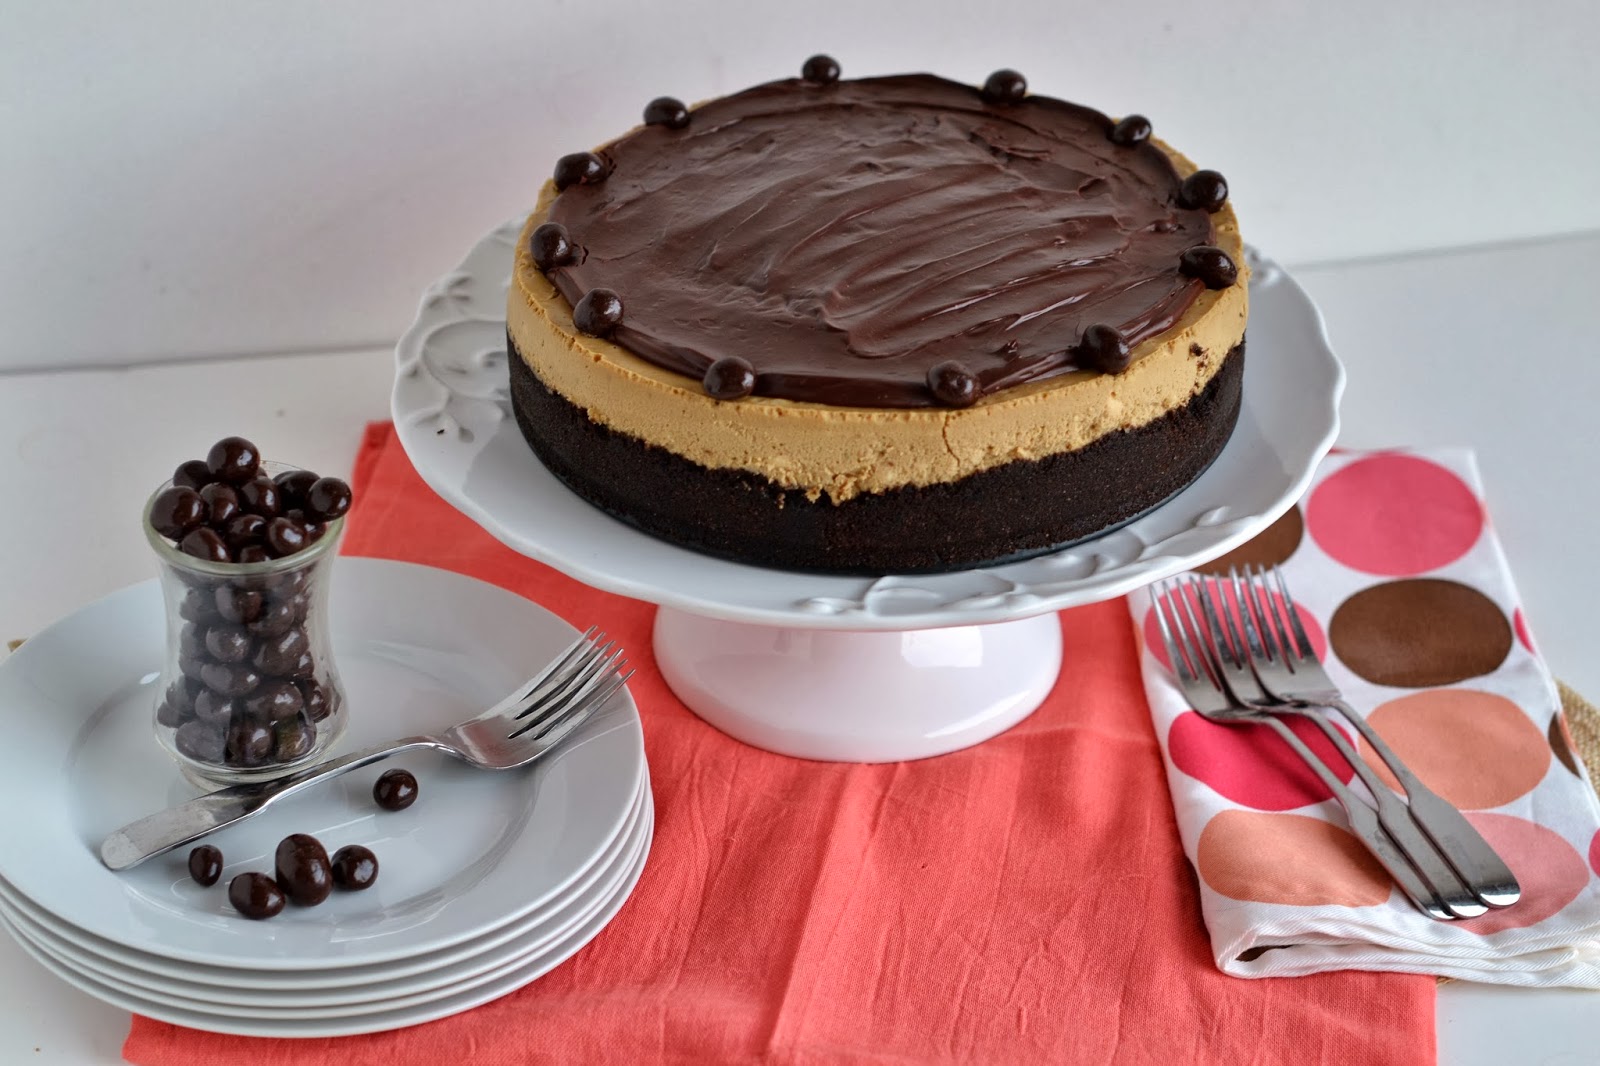 bonbons &amp; biscotti: Espresso Cheesecake with Dark Chocolate Ganache